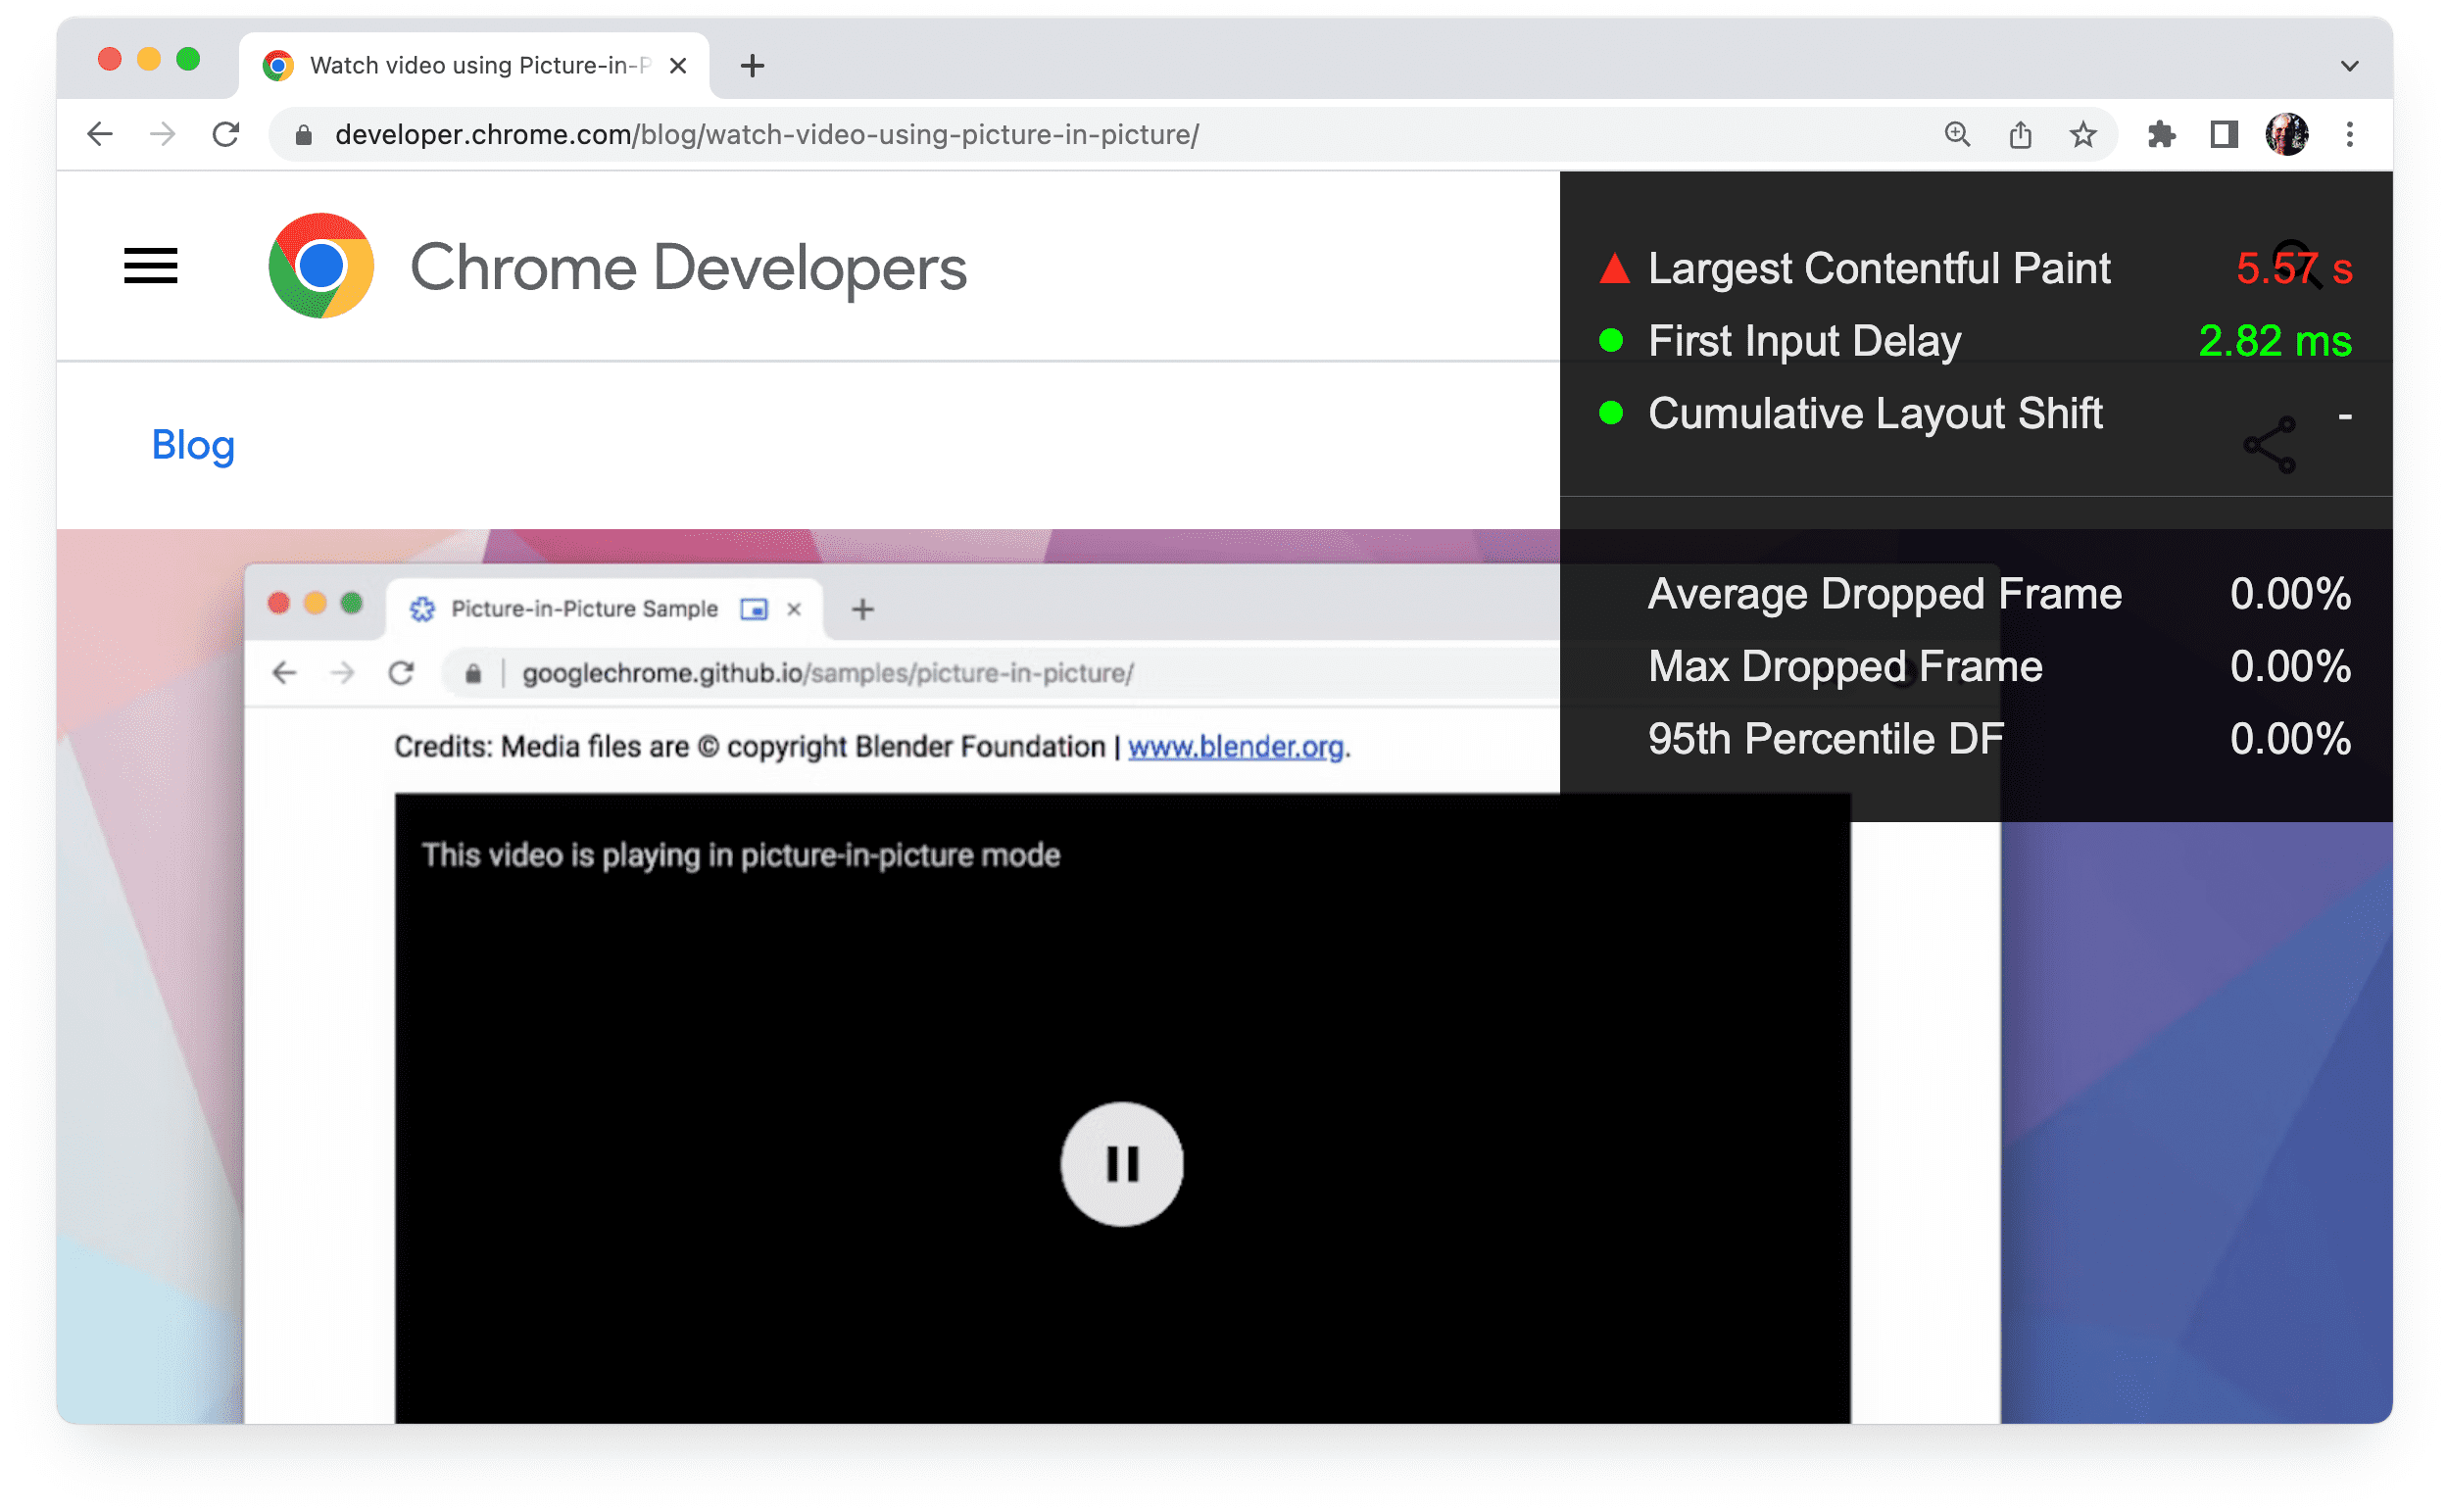 Chrome-pagina met heads-up display geactiveerd.